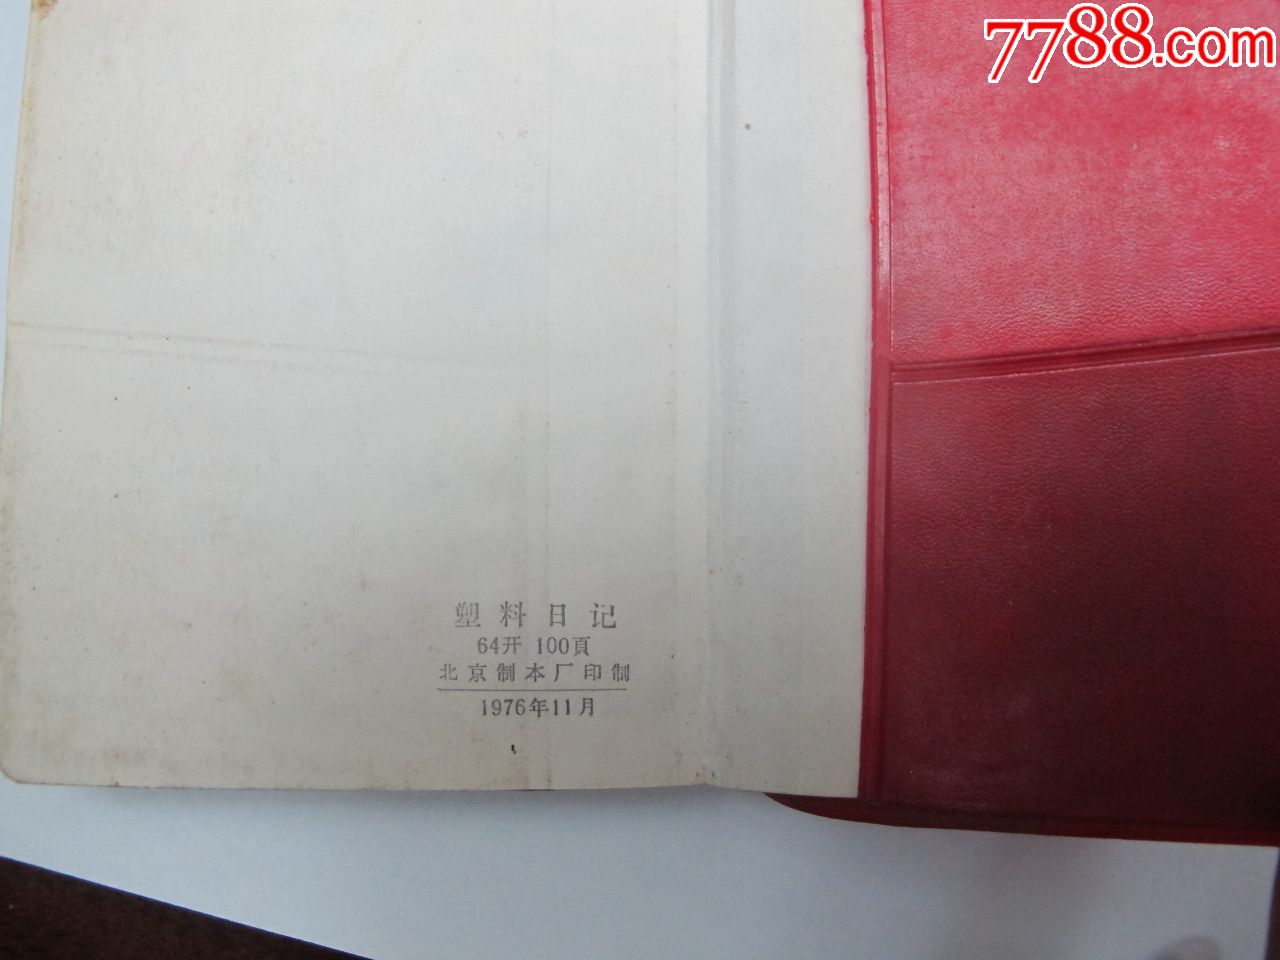 1976红色老笔记本老日记本收藏纪念插页完好,里面写字